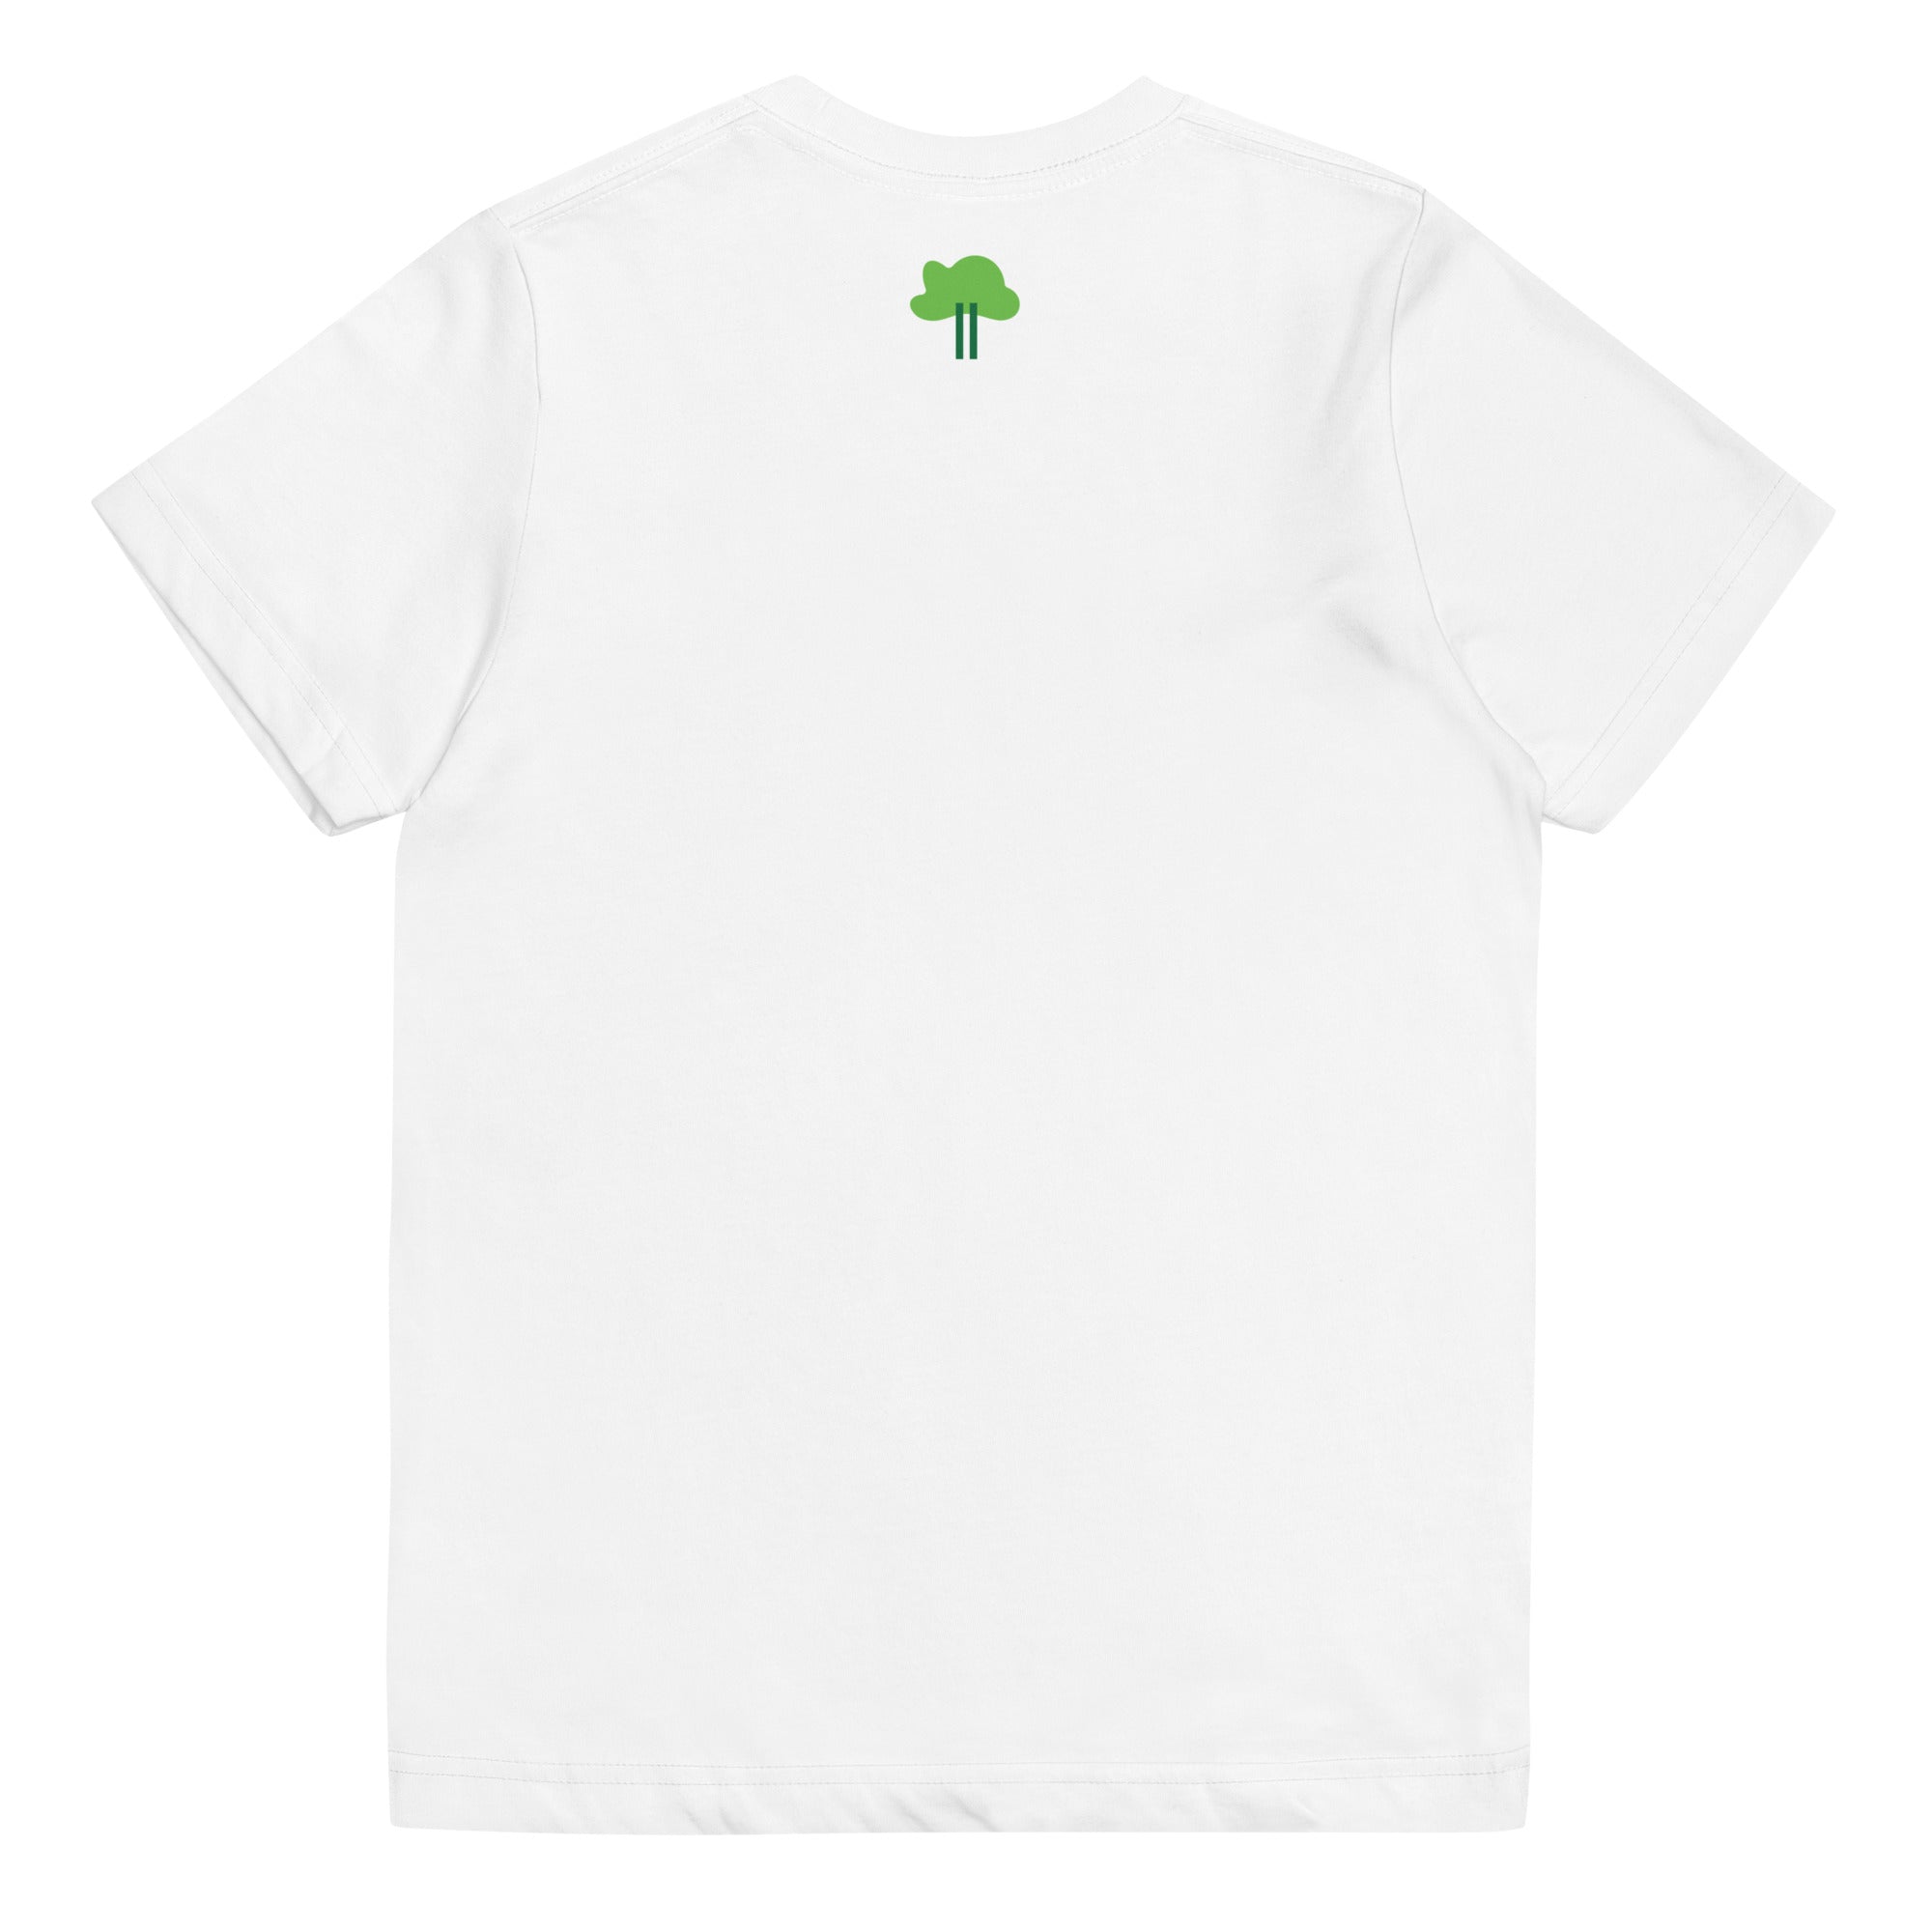 I Temp - Lago - K8 | Youth jersey t-shirt